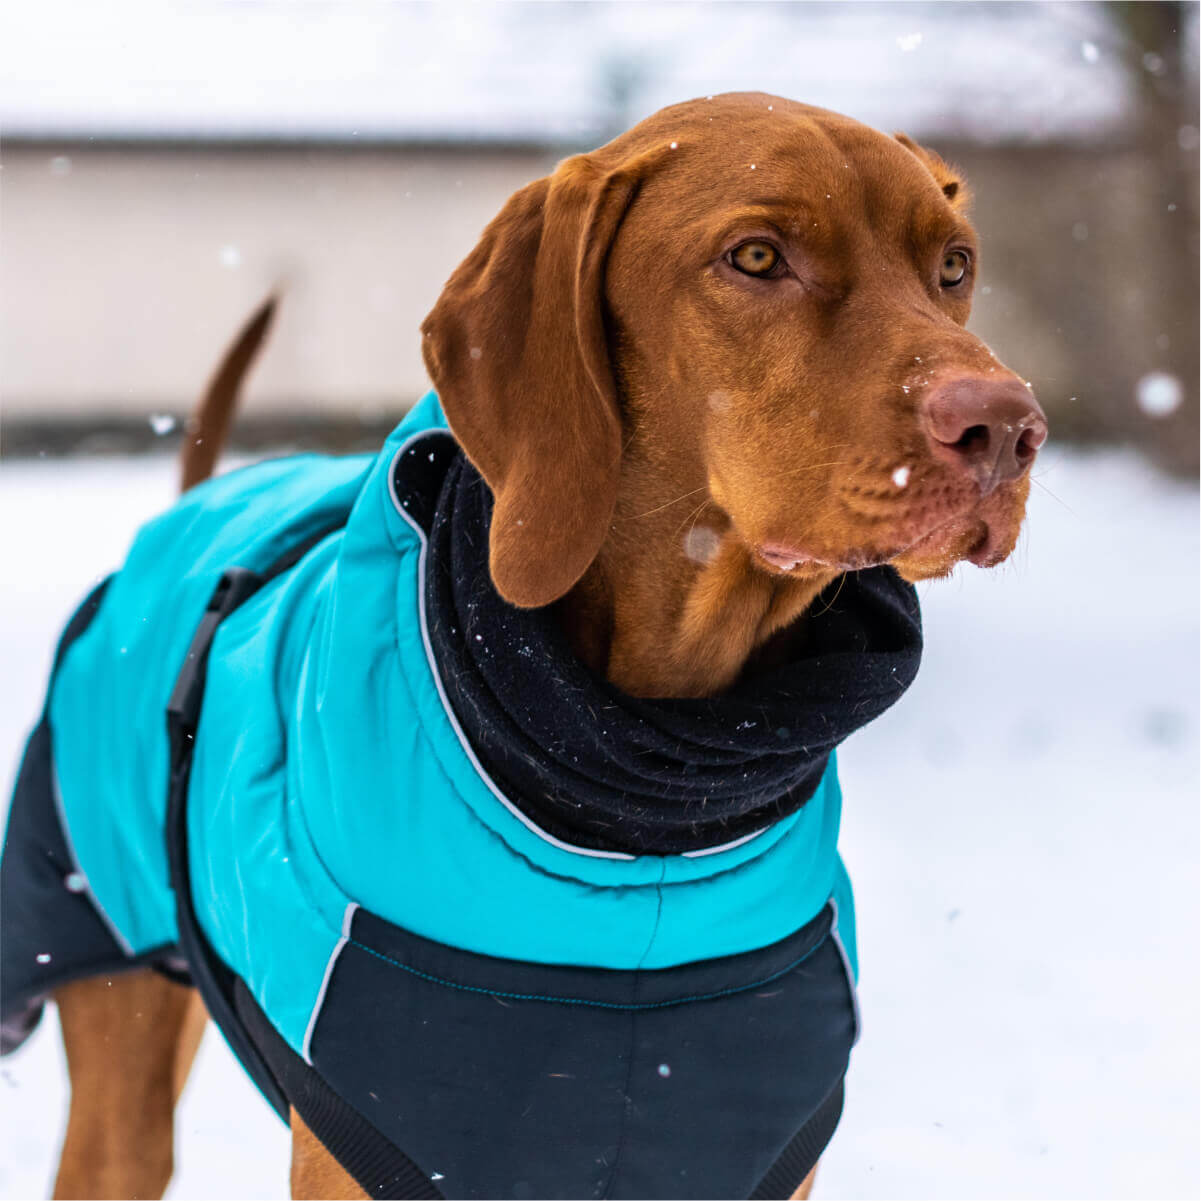 A cute dog in a stylish blue jacket enjoying the snowy weather.